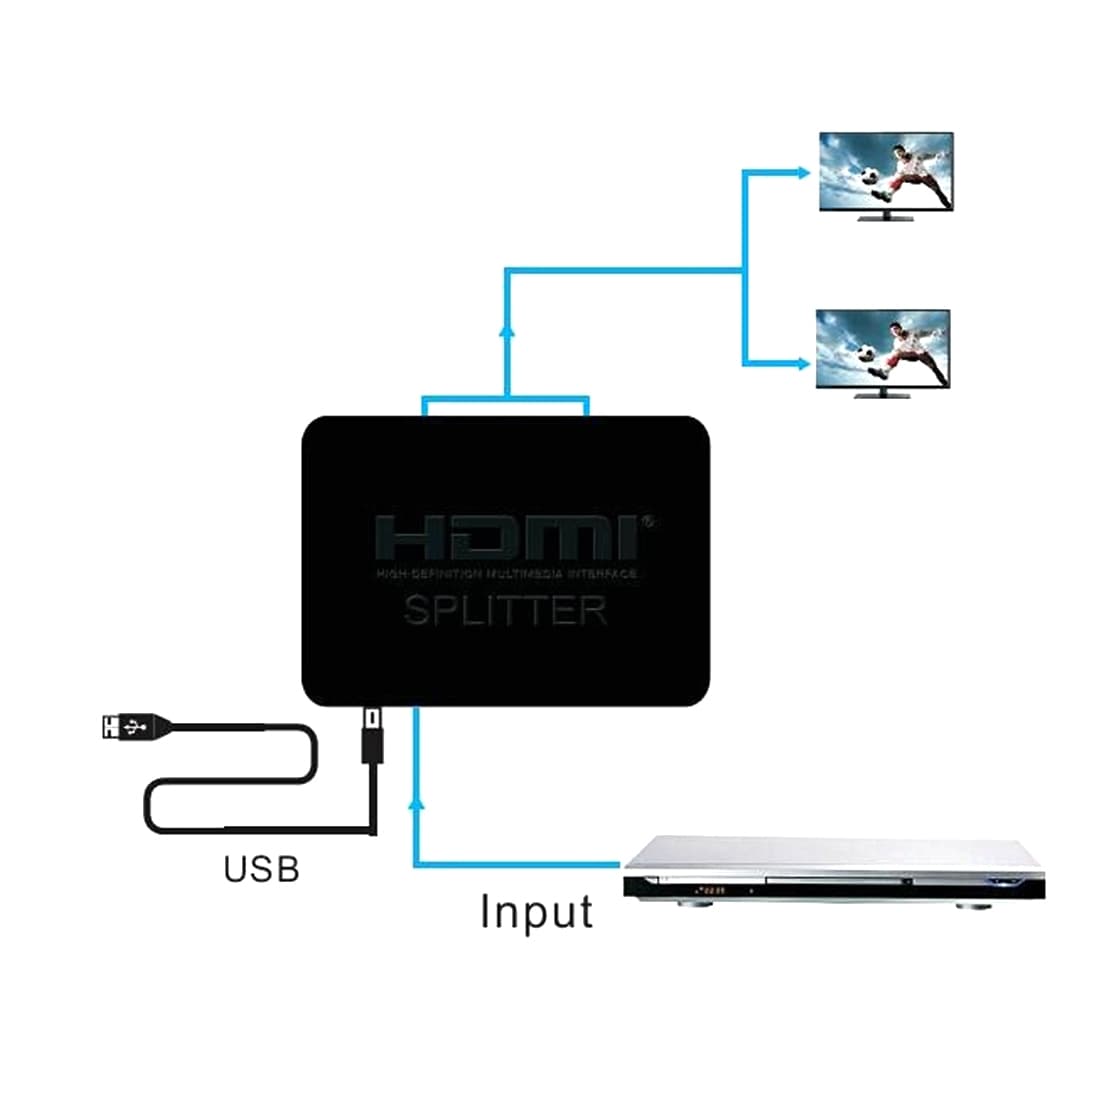 HDMI Splitter 4K Full HD 1080p Dobbelt Display